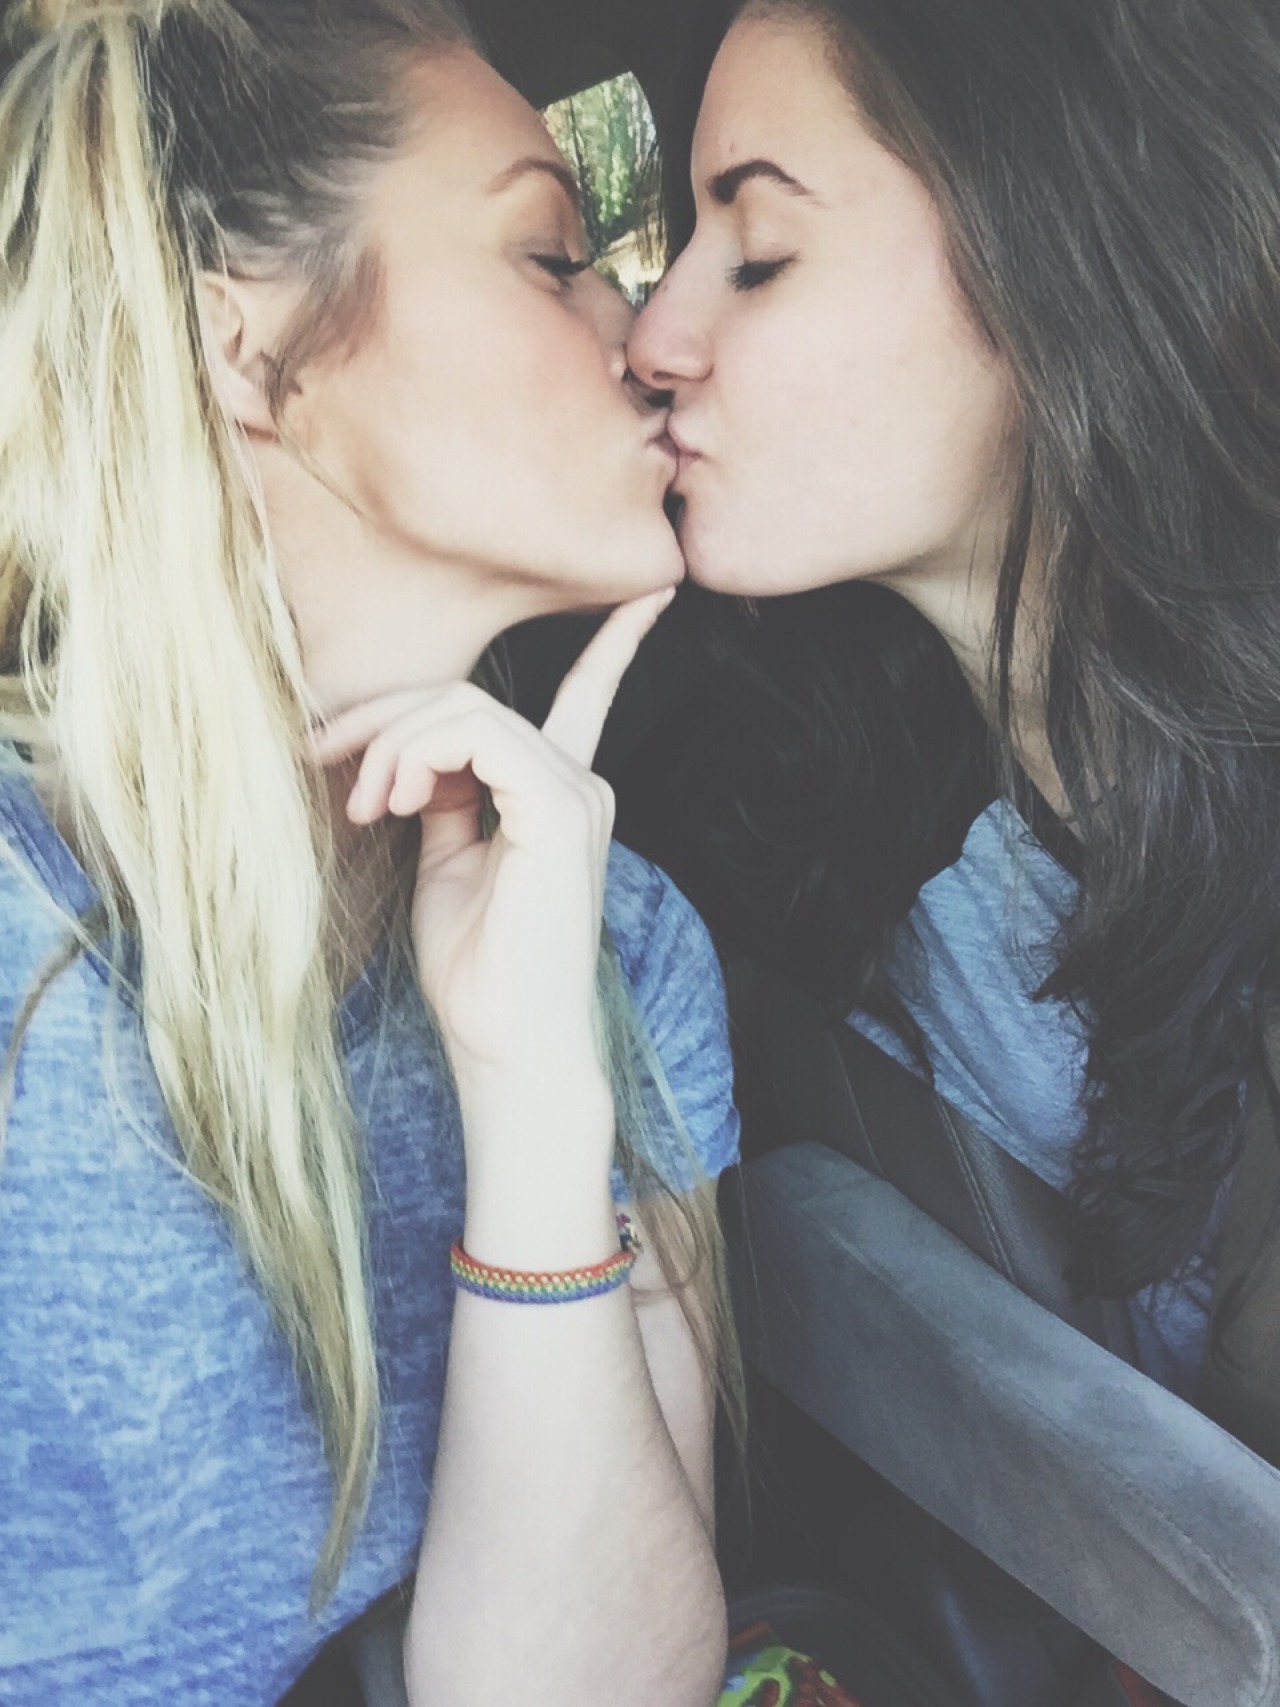 Девушки сосутся друг друга. Поцелуй девушек. Девушки целуются. Девушка целует девушку. Две девушки целуются.